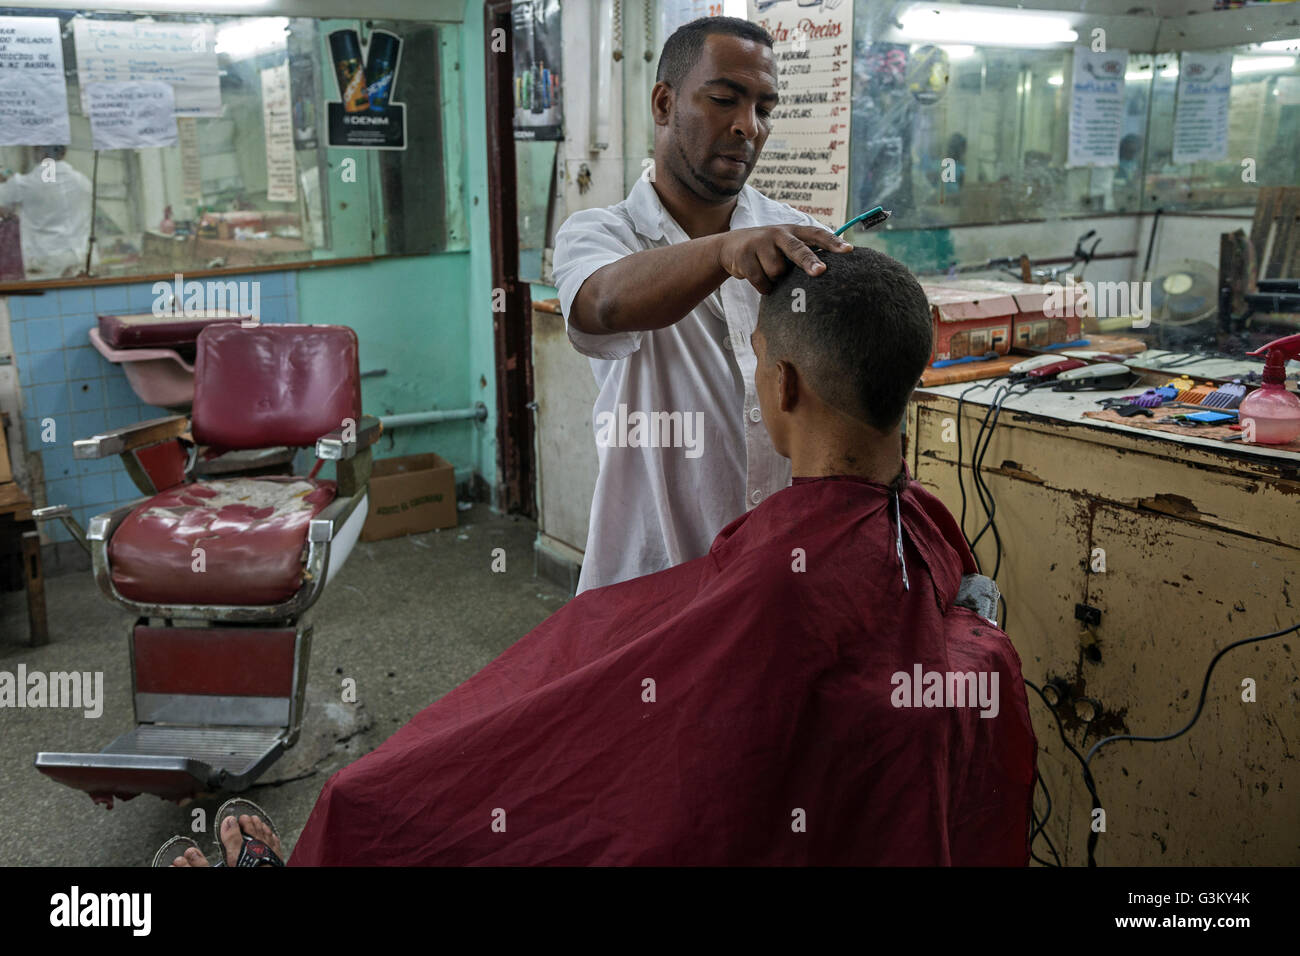 Salon de coiffure, salon de coiffure la coupe de cheveux, le centre historique, La Havane, Cuba Banque D'Images